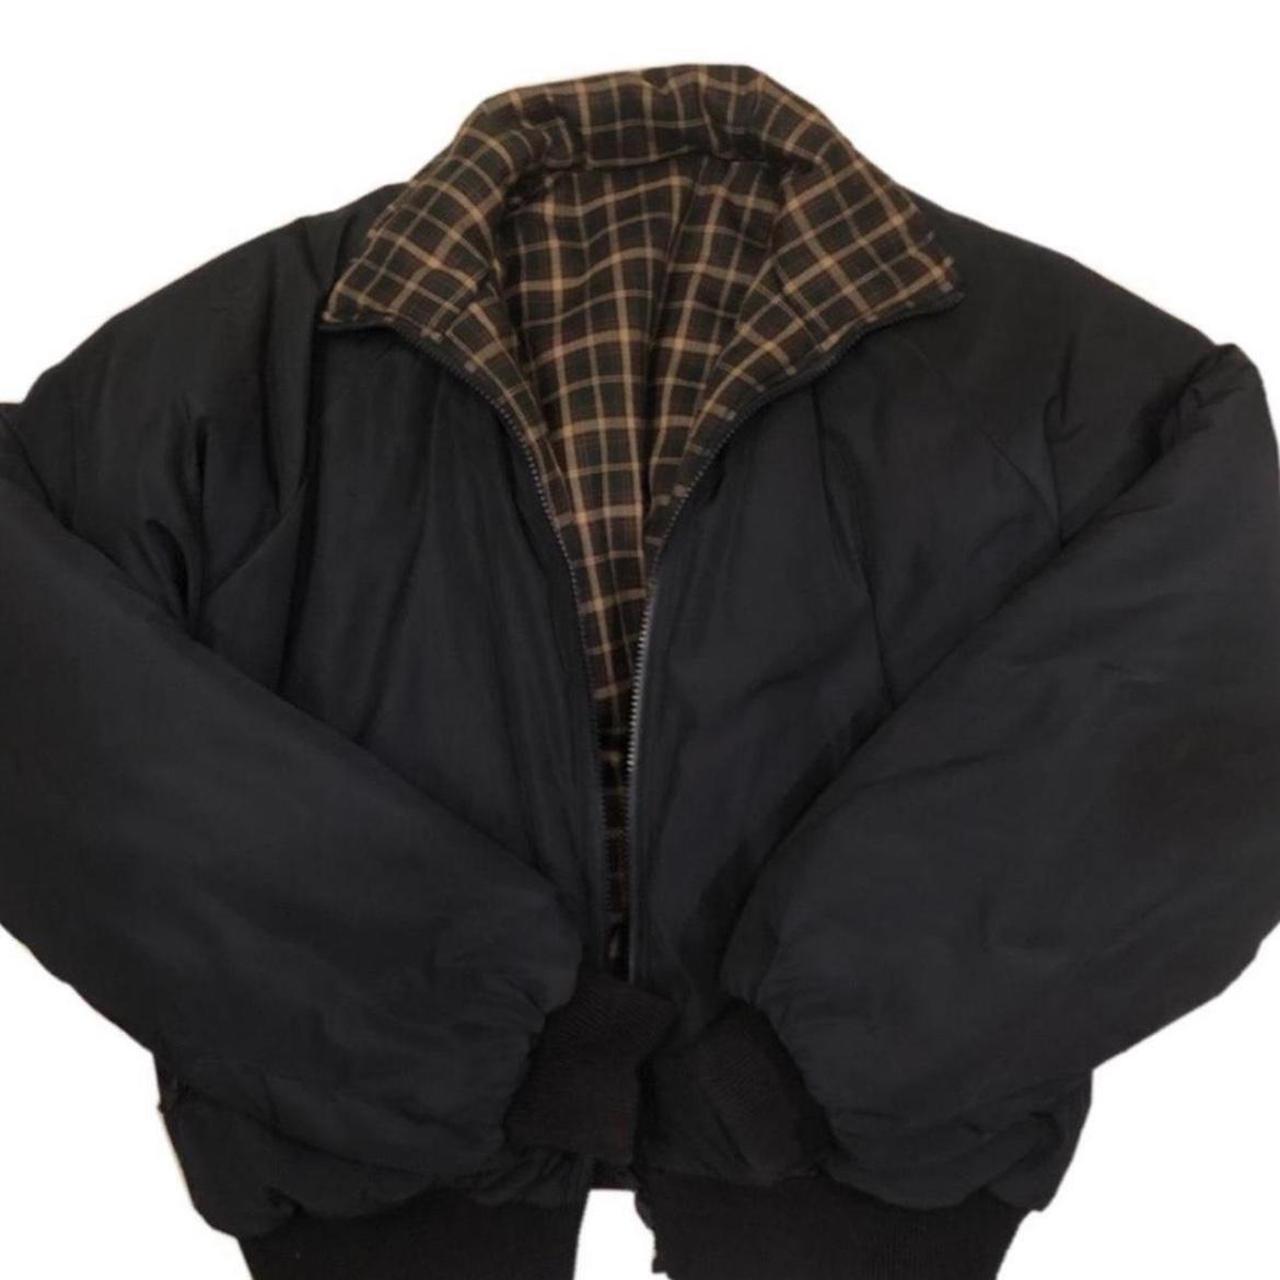 Brandy Melville Puffer Coats & Jackets